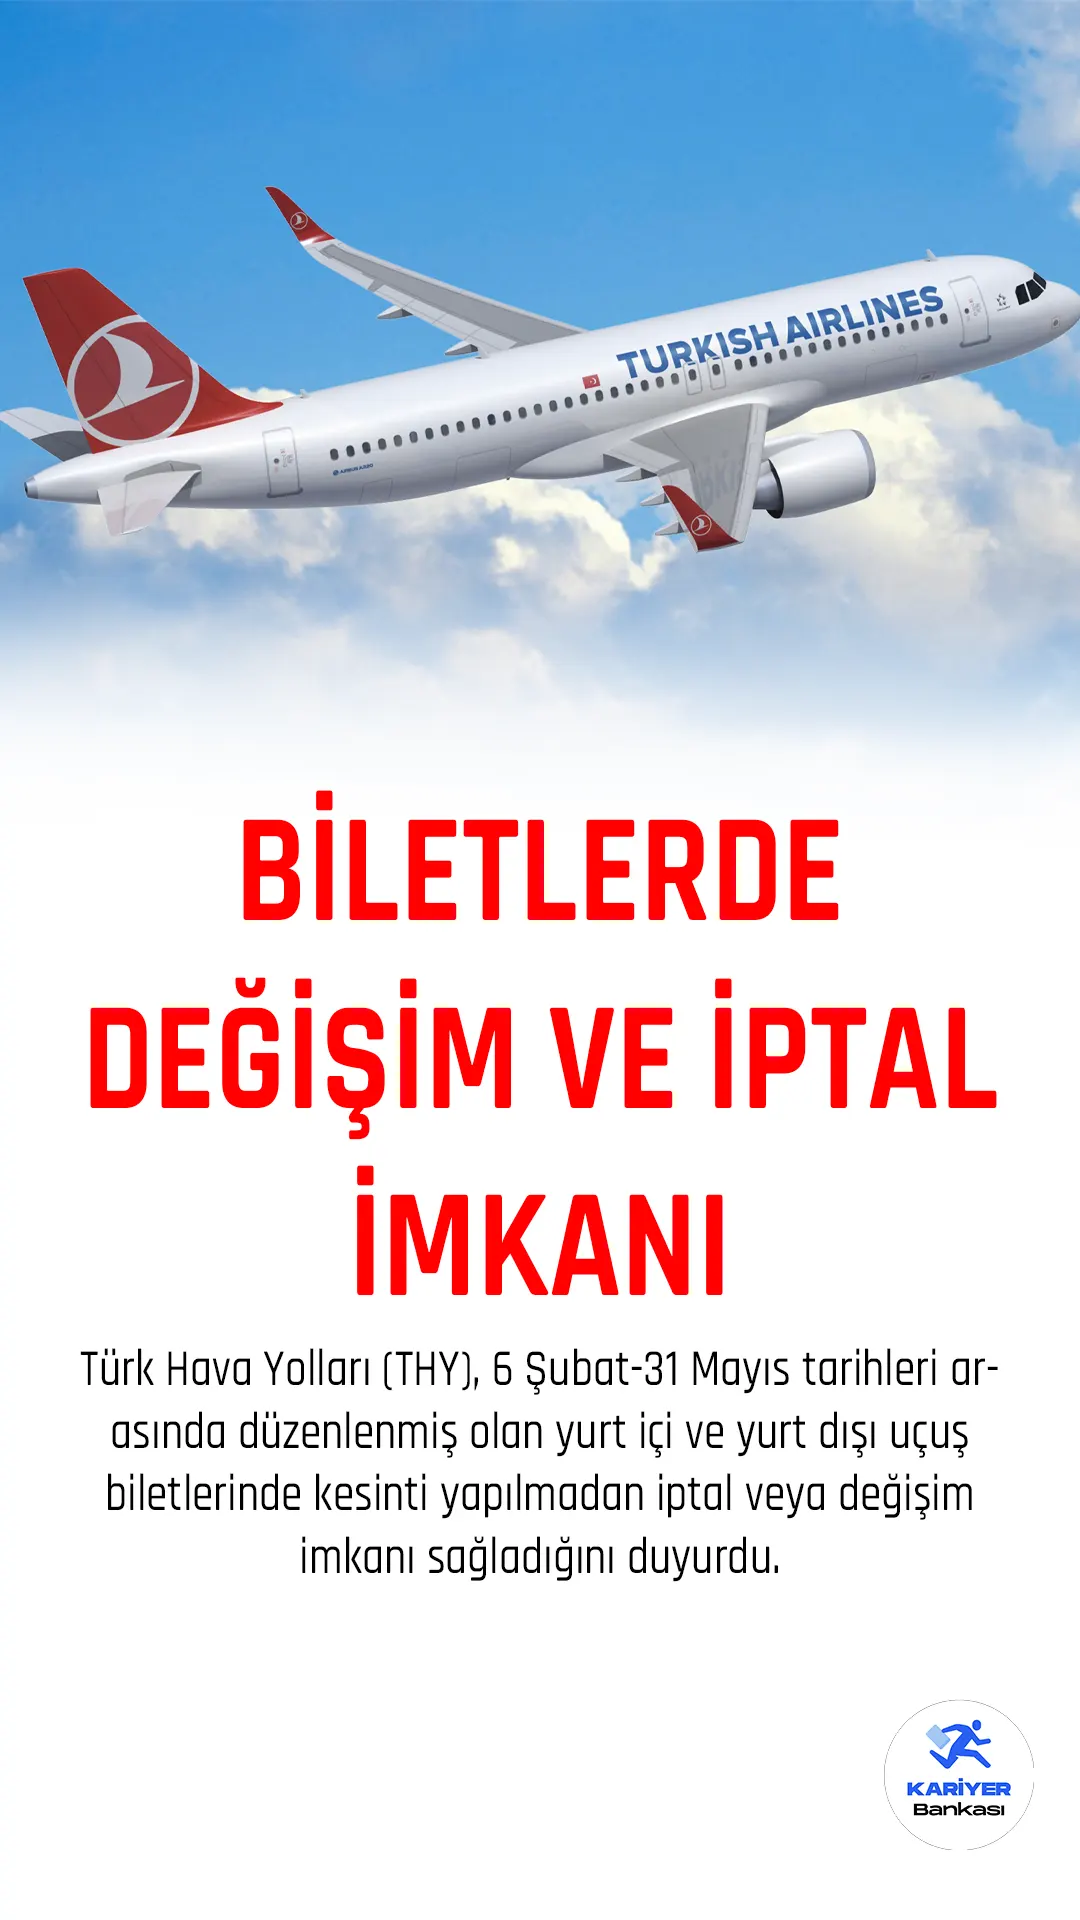 Türk Hava Yolları (THY), 6 Şubat-31 Mayıs tarihleri arasında düzenlenmiş olan yurt içi ve yurt dışı uçuş biletlerinde kesinti yapılmadan iptal veya değişim imkanı sağladığını duyurdu.